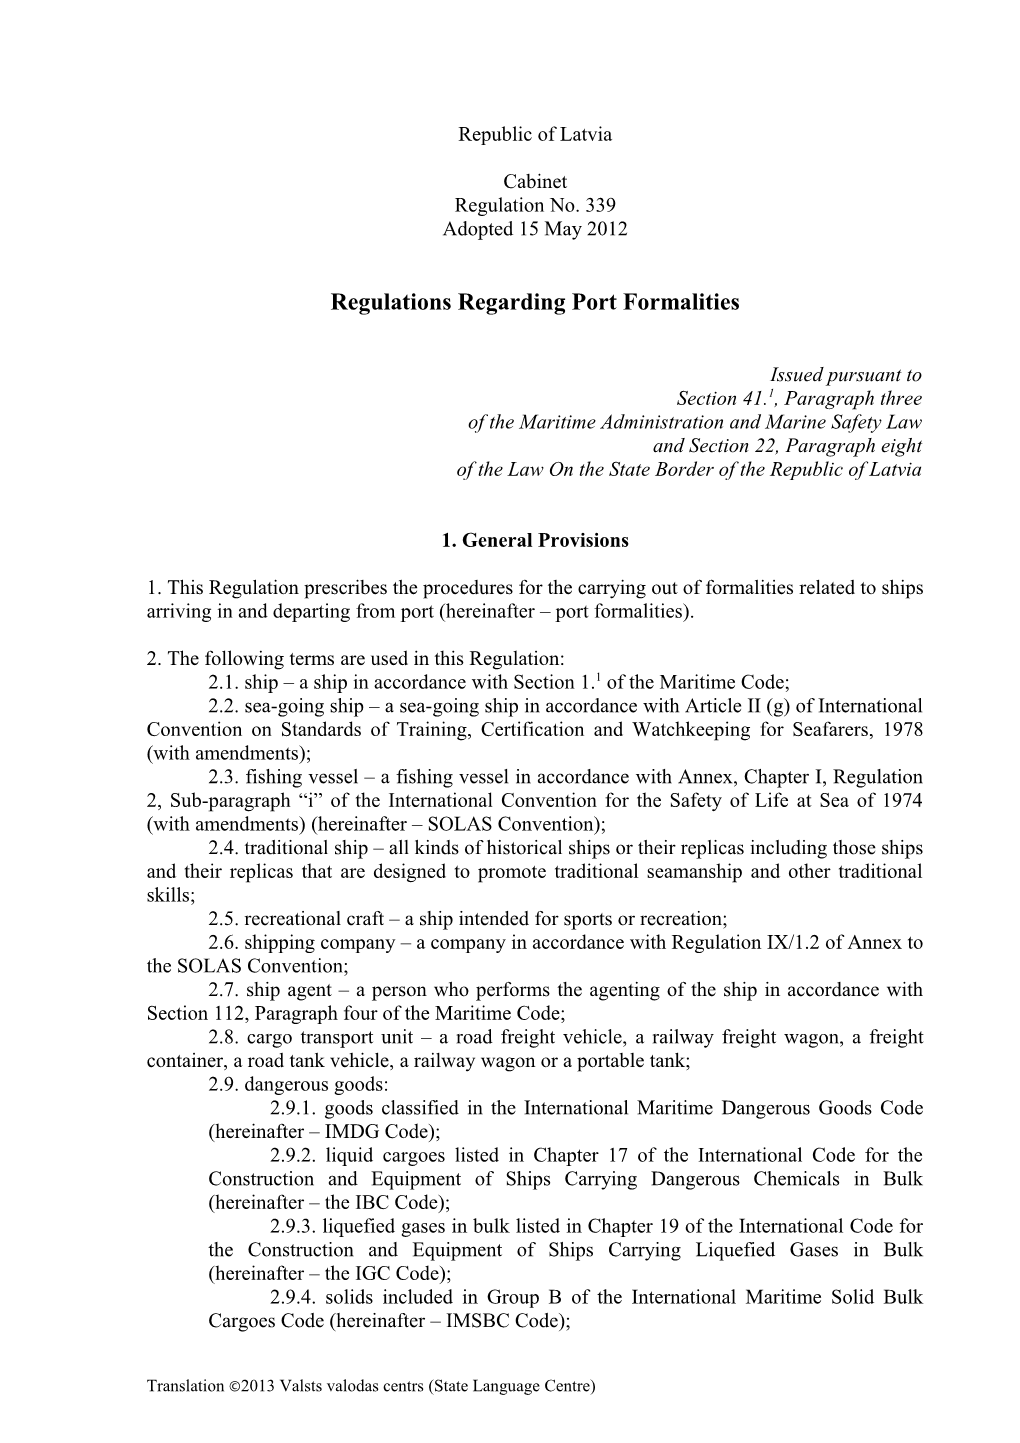 Regulations Regarding Port Formalities